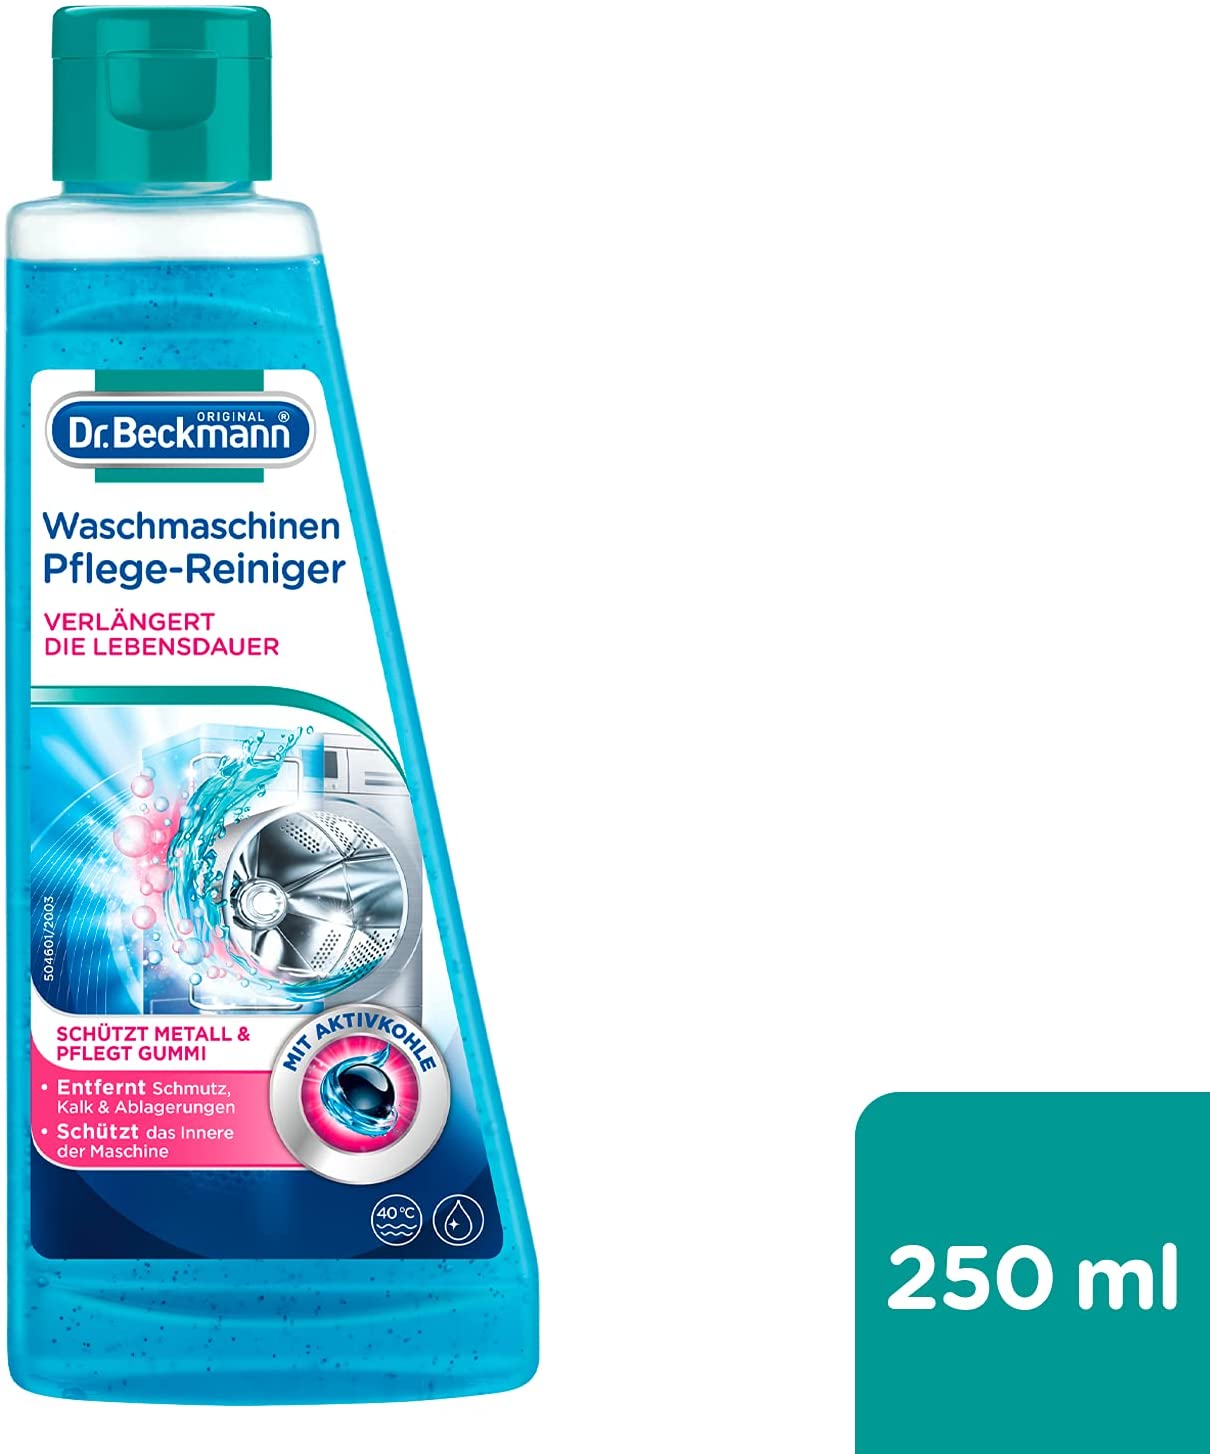 Dung dịch vệ sinh lồng giặt Dr.Beckmann Waschmaschinen Pflege